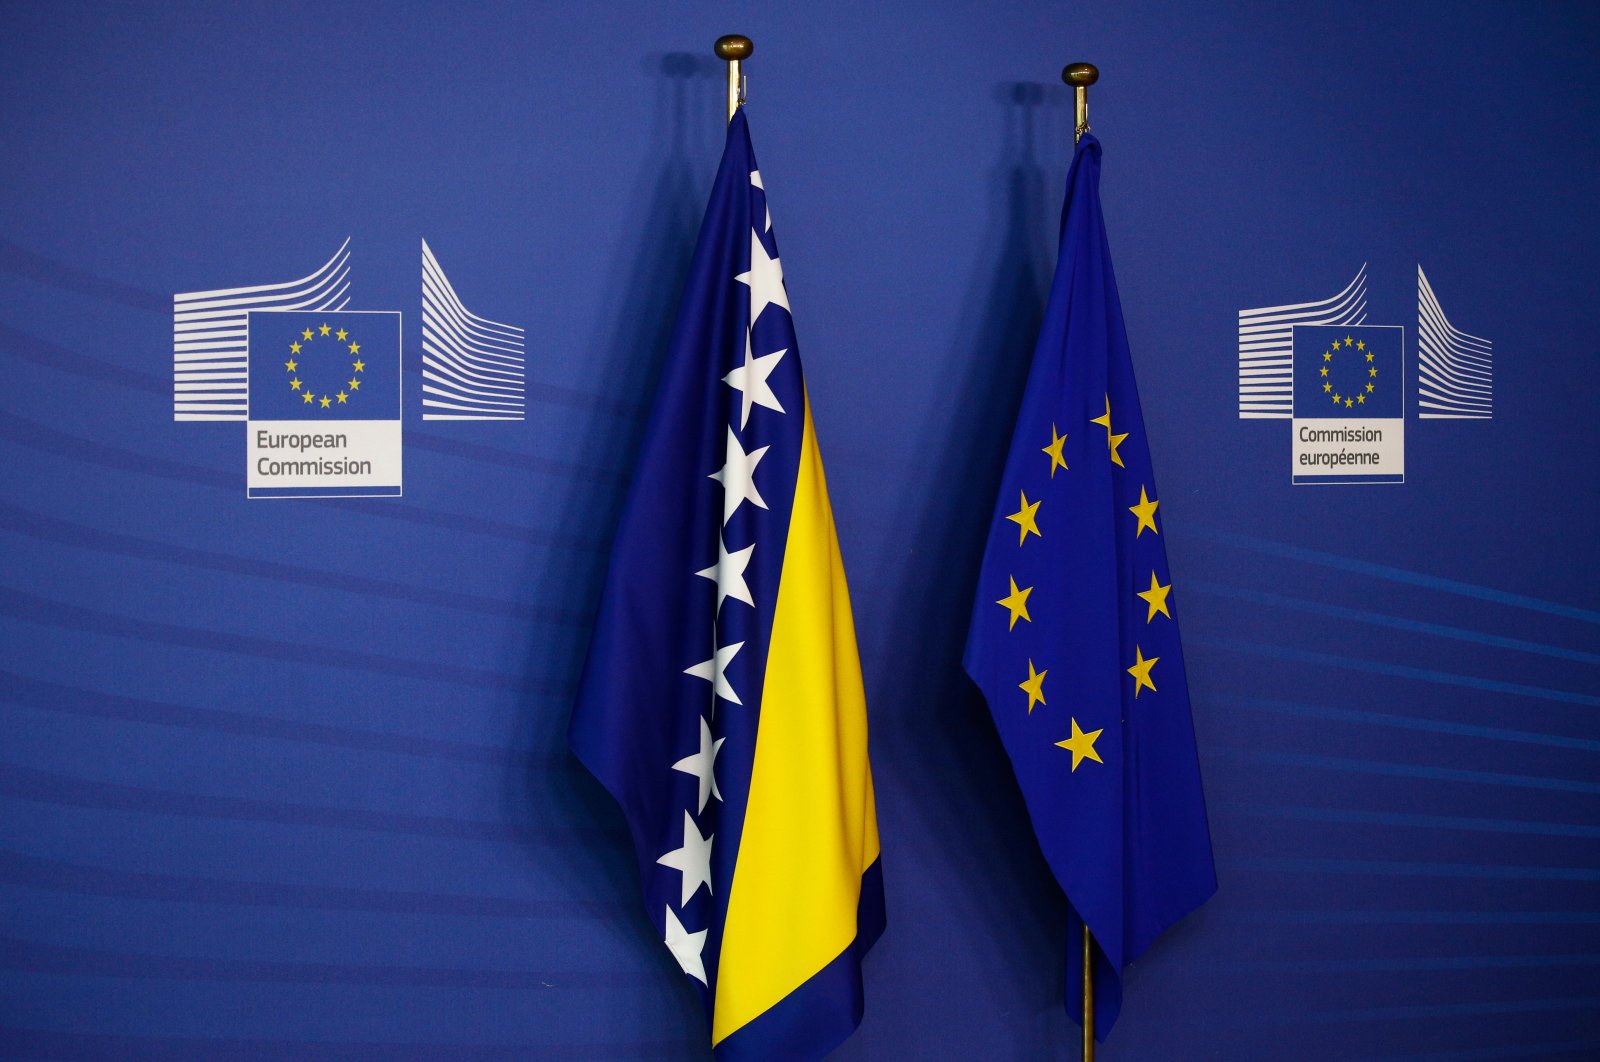 Biarkan Bosnia bergabung dengan UE, yakinkan kami bahwa Anda bukan ‘klub Kristen’